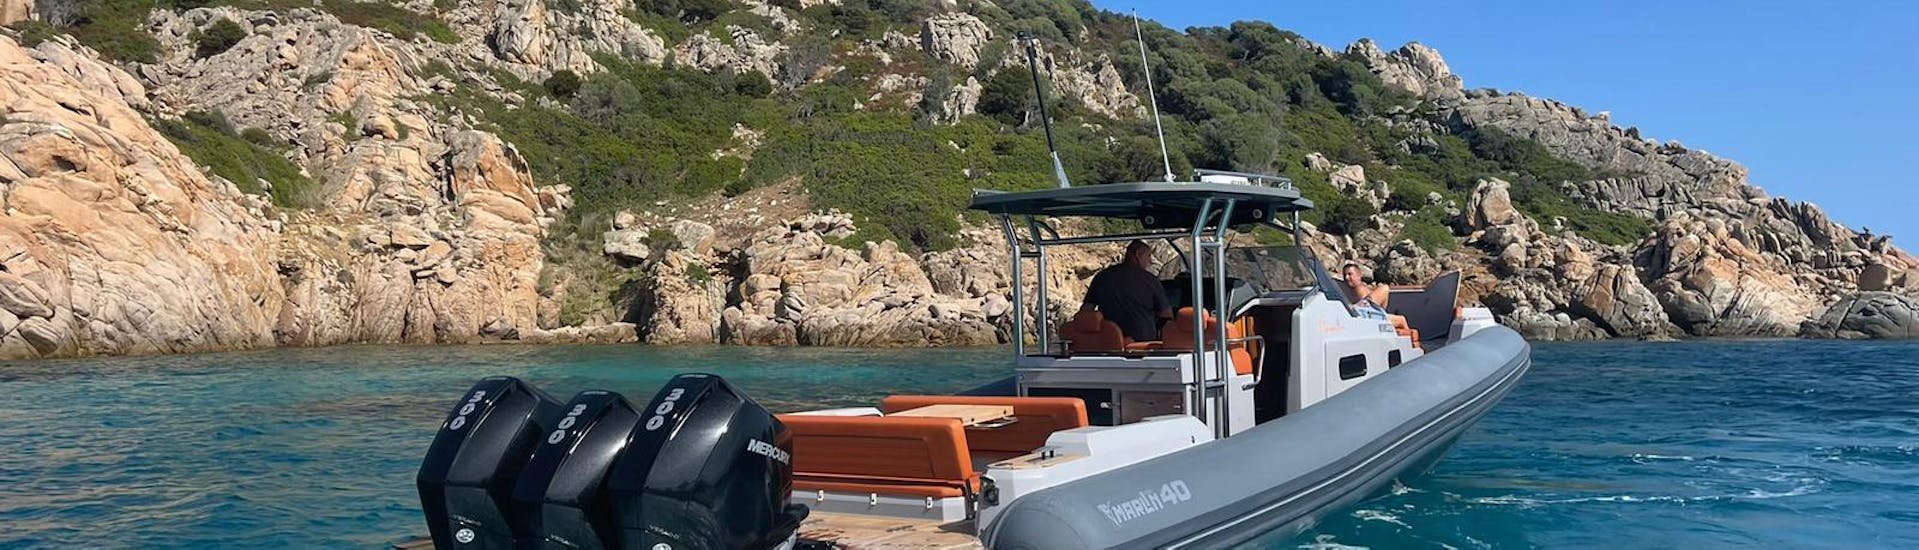 Ein Boot ist während einer der Bootstouren von Controvento Charter Olbia auf dem Weg zur Insel Tavolara.